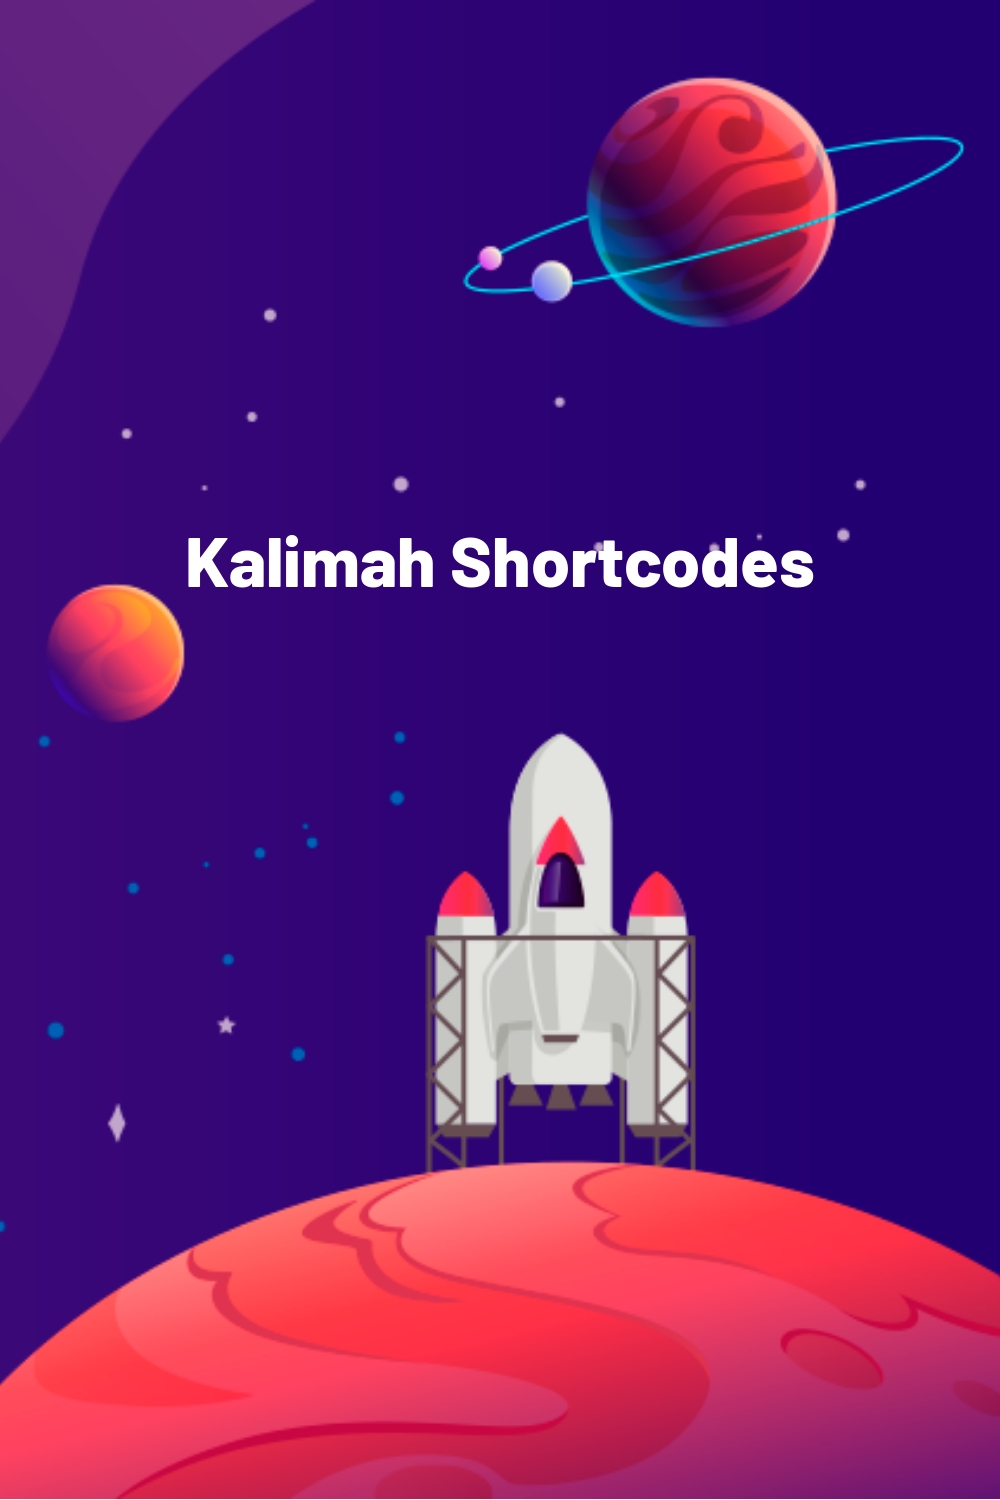 Kalimah Shortcodes